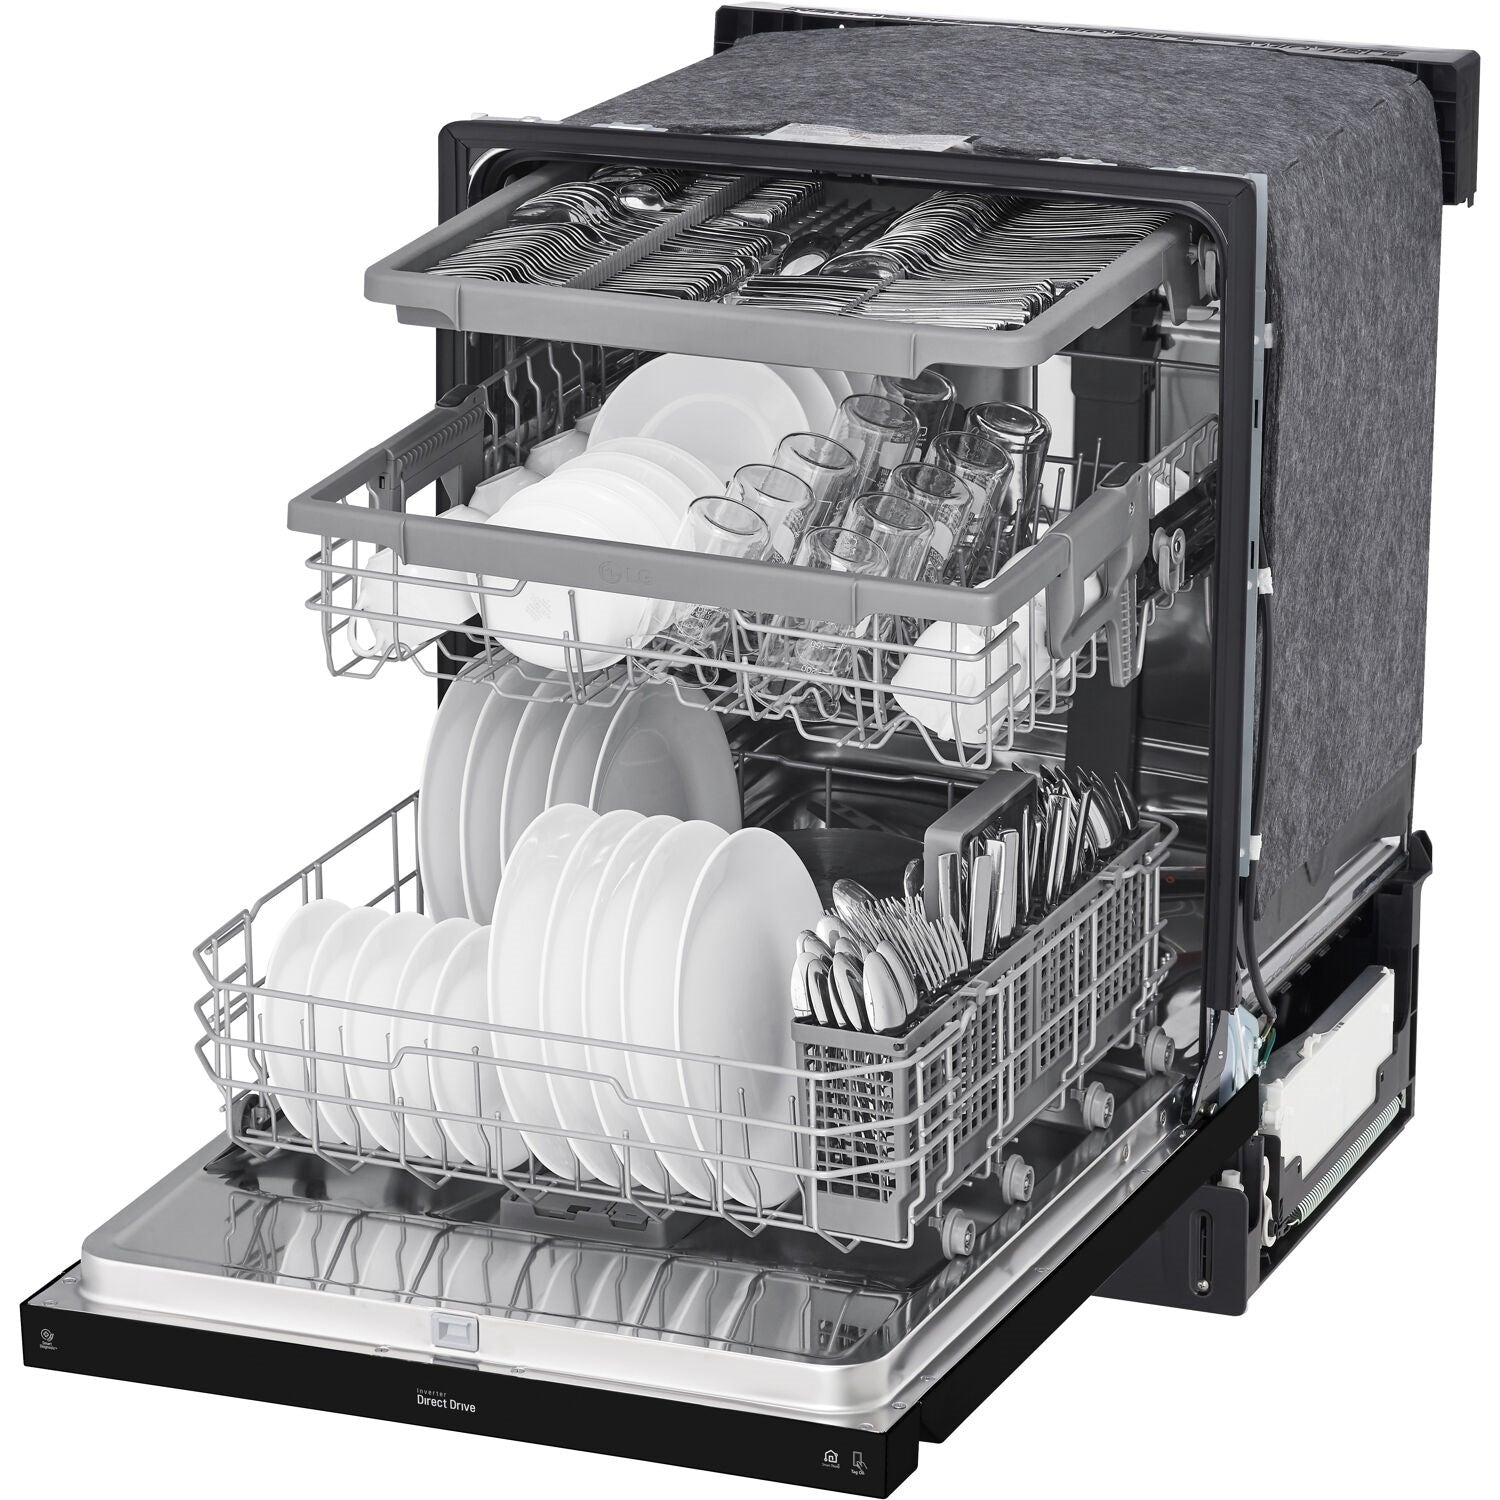 LG Semi Integrated Built In Dishwashers LDFN4542B